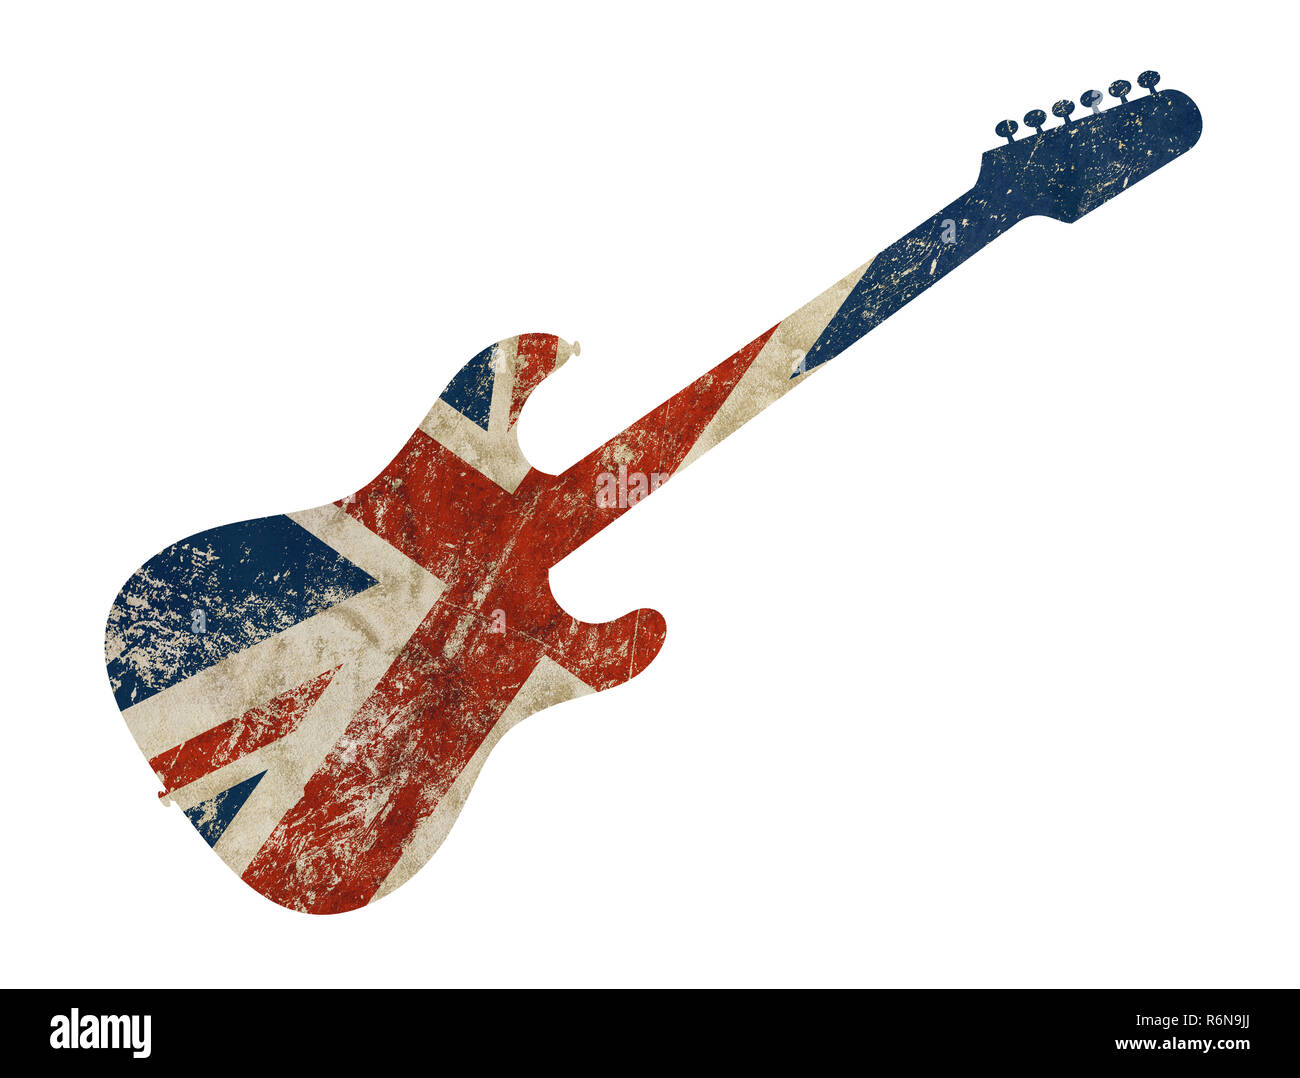 Electric guitar england flag Banque d'images détourées - Alamy